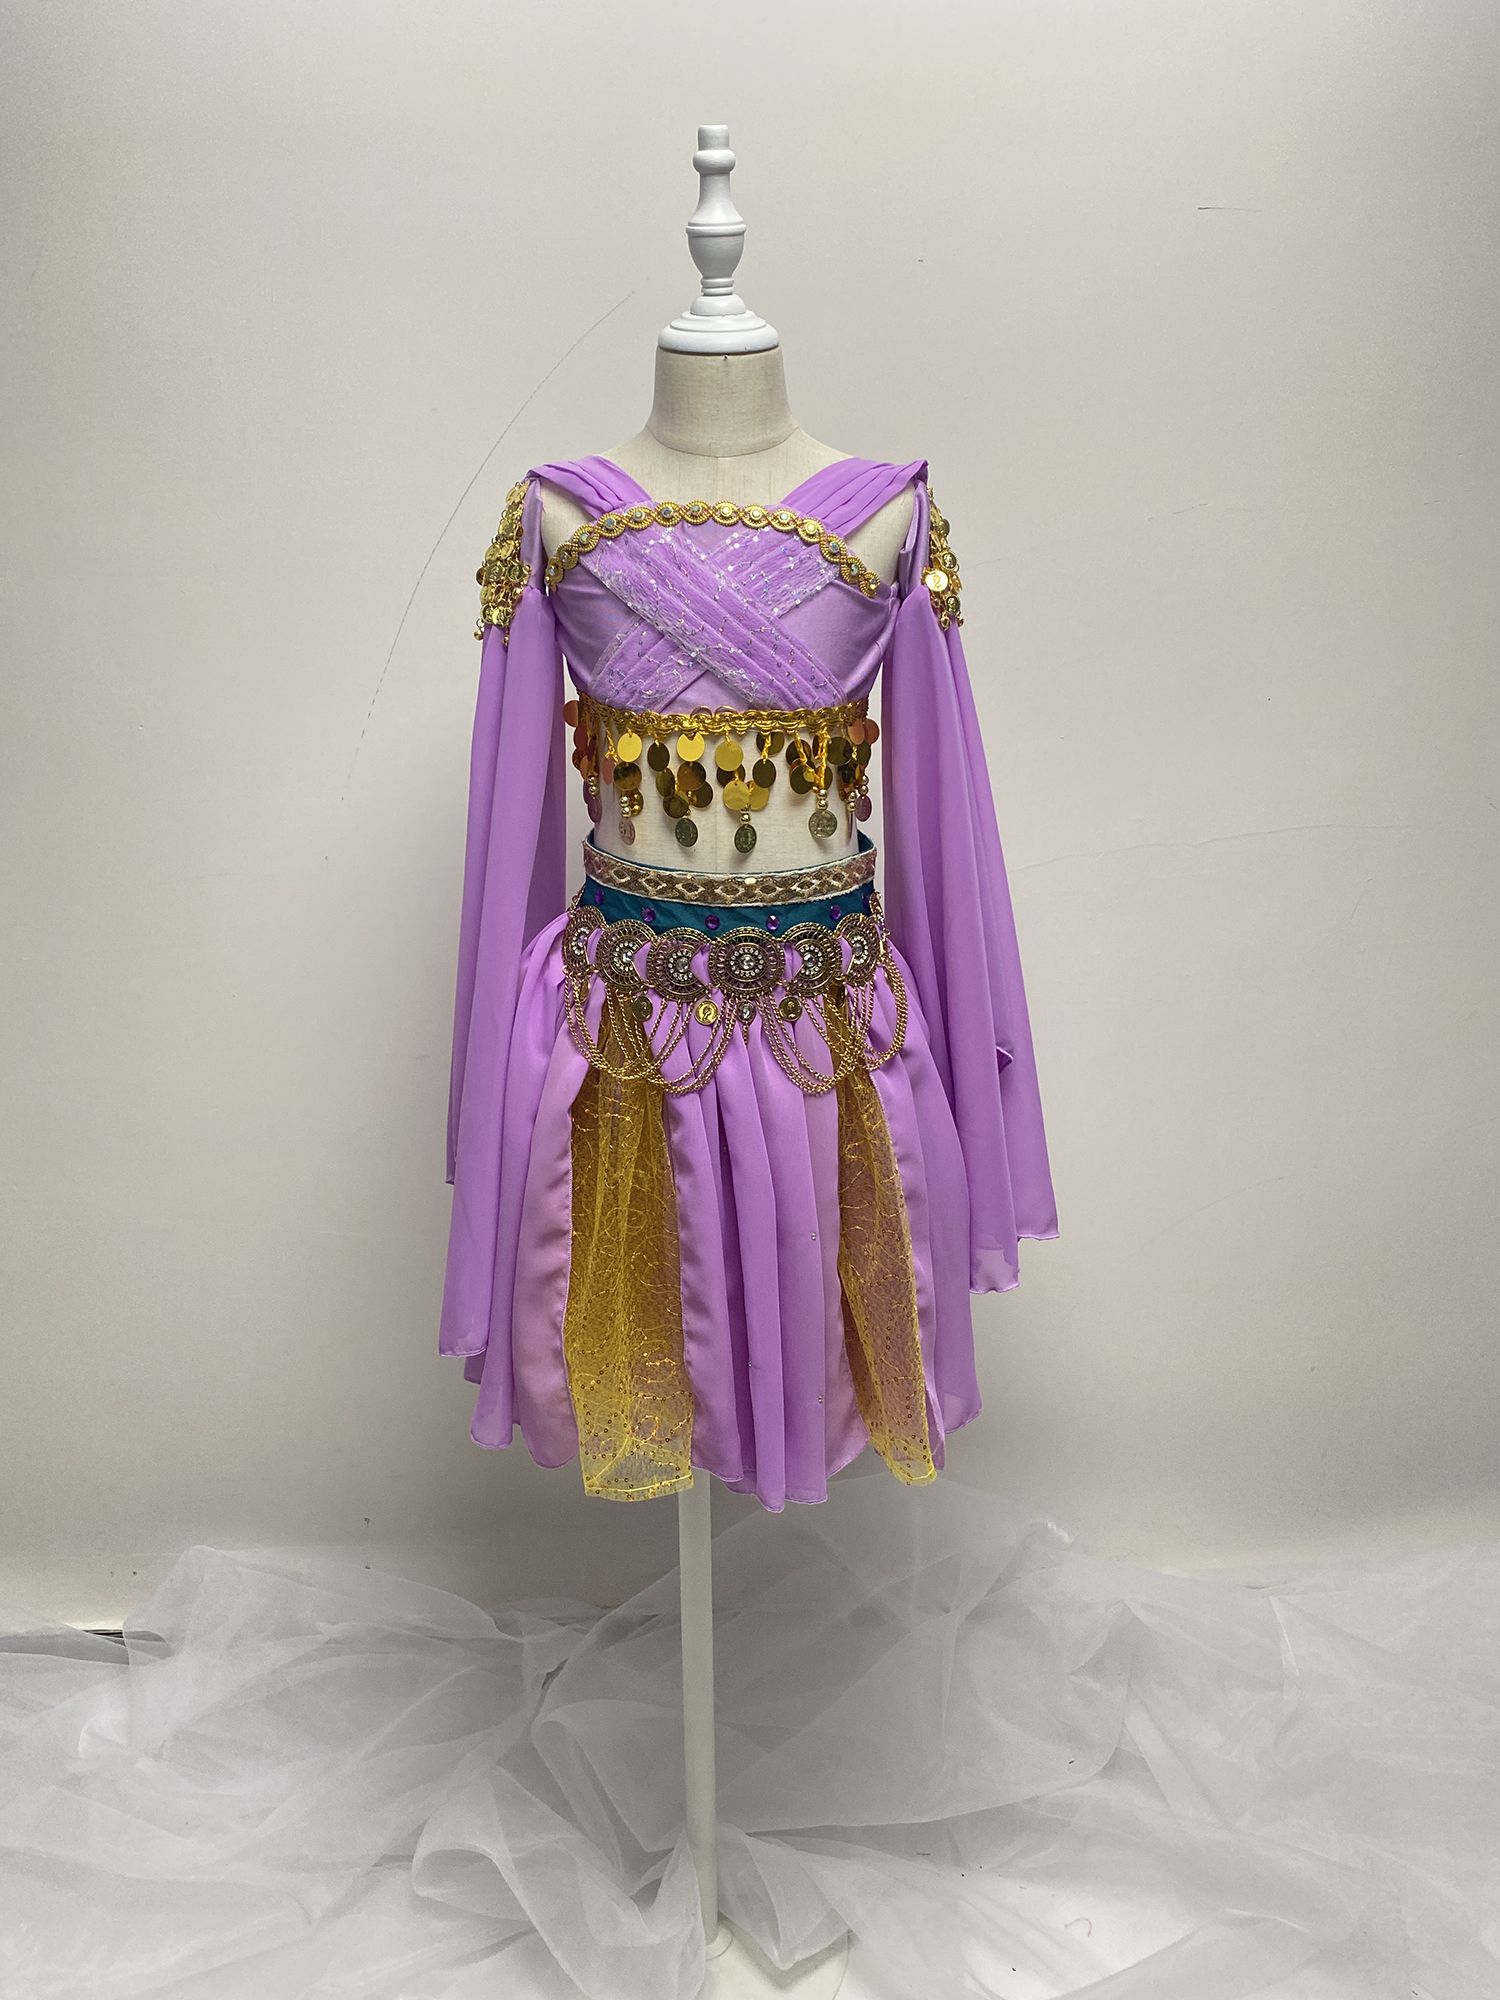 儿童印度舞服装婆罗多公主裙演出服幼儿肚皮舞表演服装裙子定制